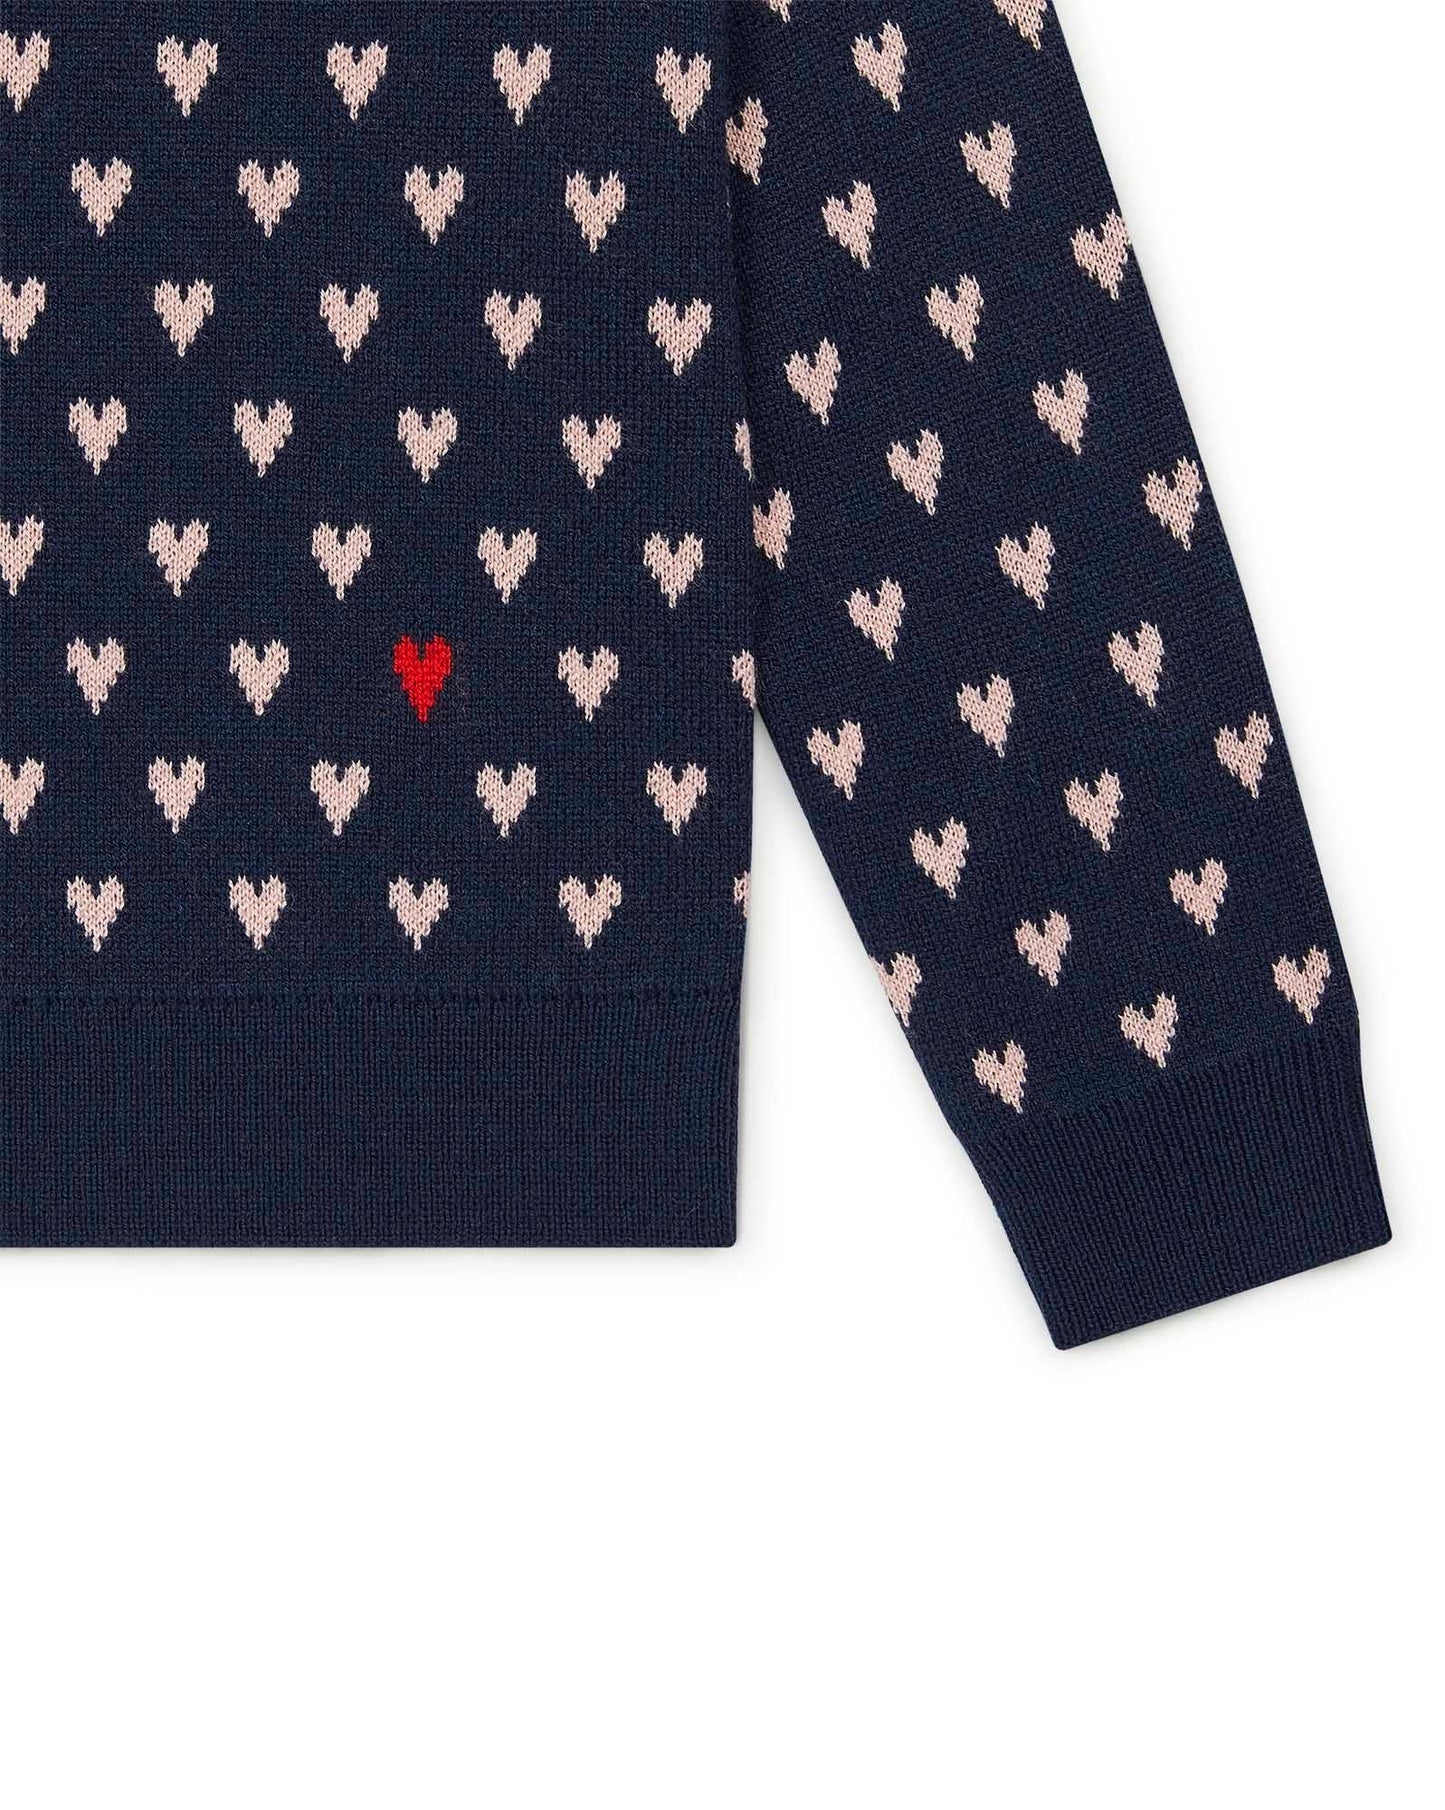 Sweater - Mon Amour Blue in Knitweardouble jacquard